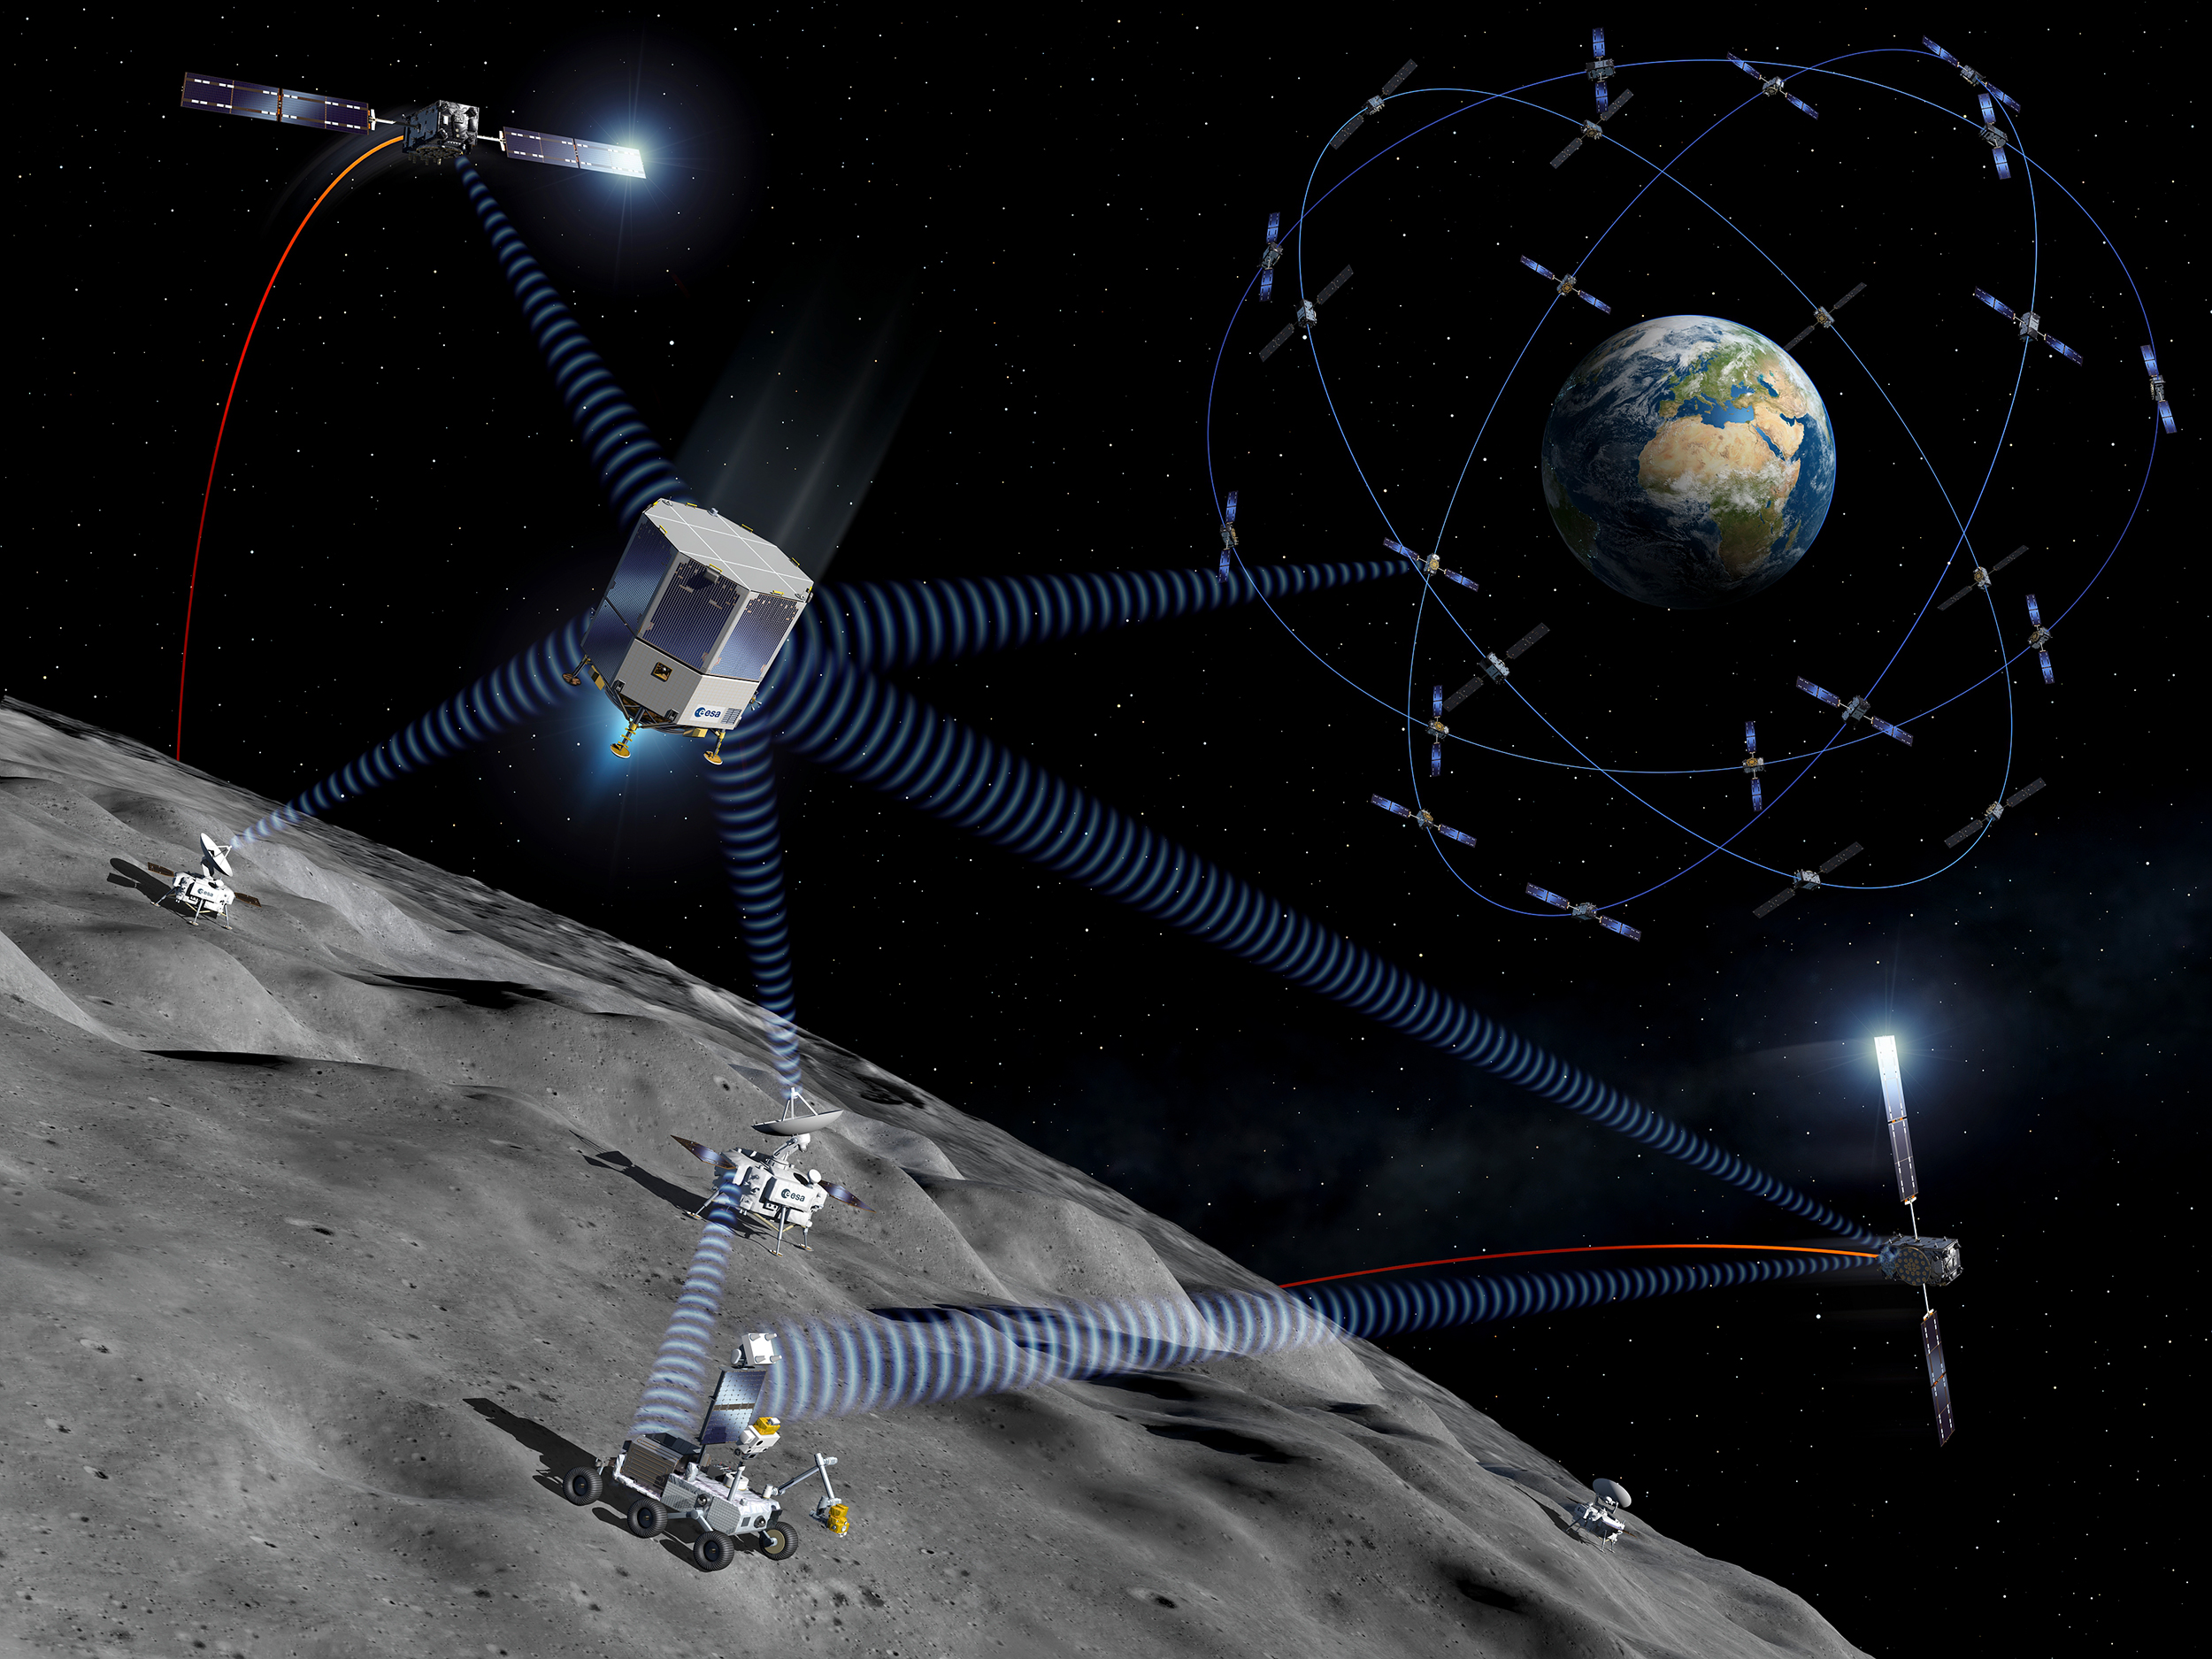 « Moonlight », un projet de constellation de satellites lunaires commercialement viable pour fournir des services de télécommunication et de navigation pour les missions sur la Lune. © ESA, P. Carril